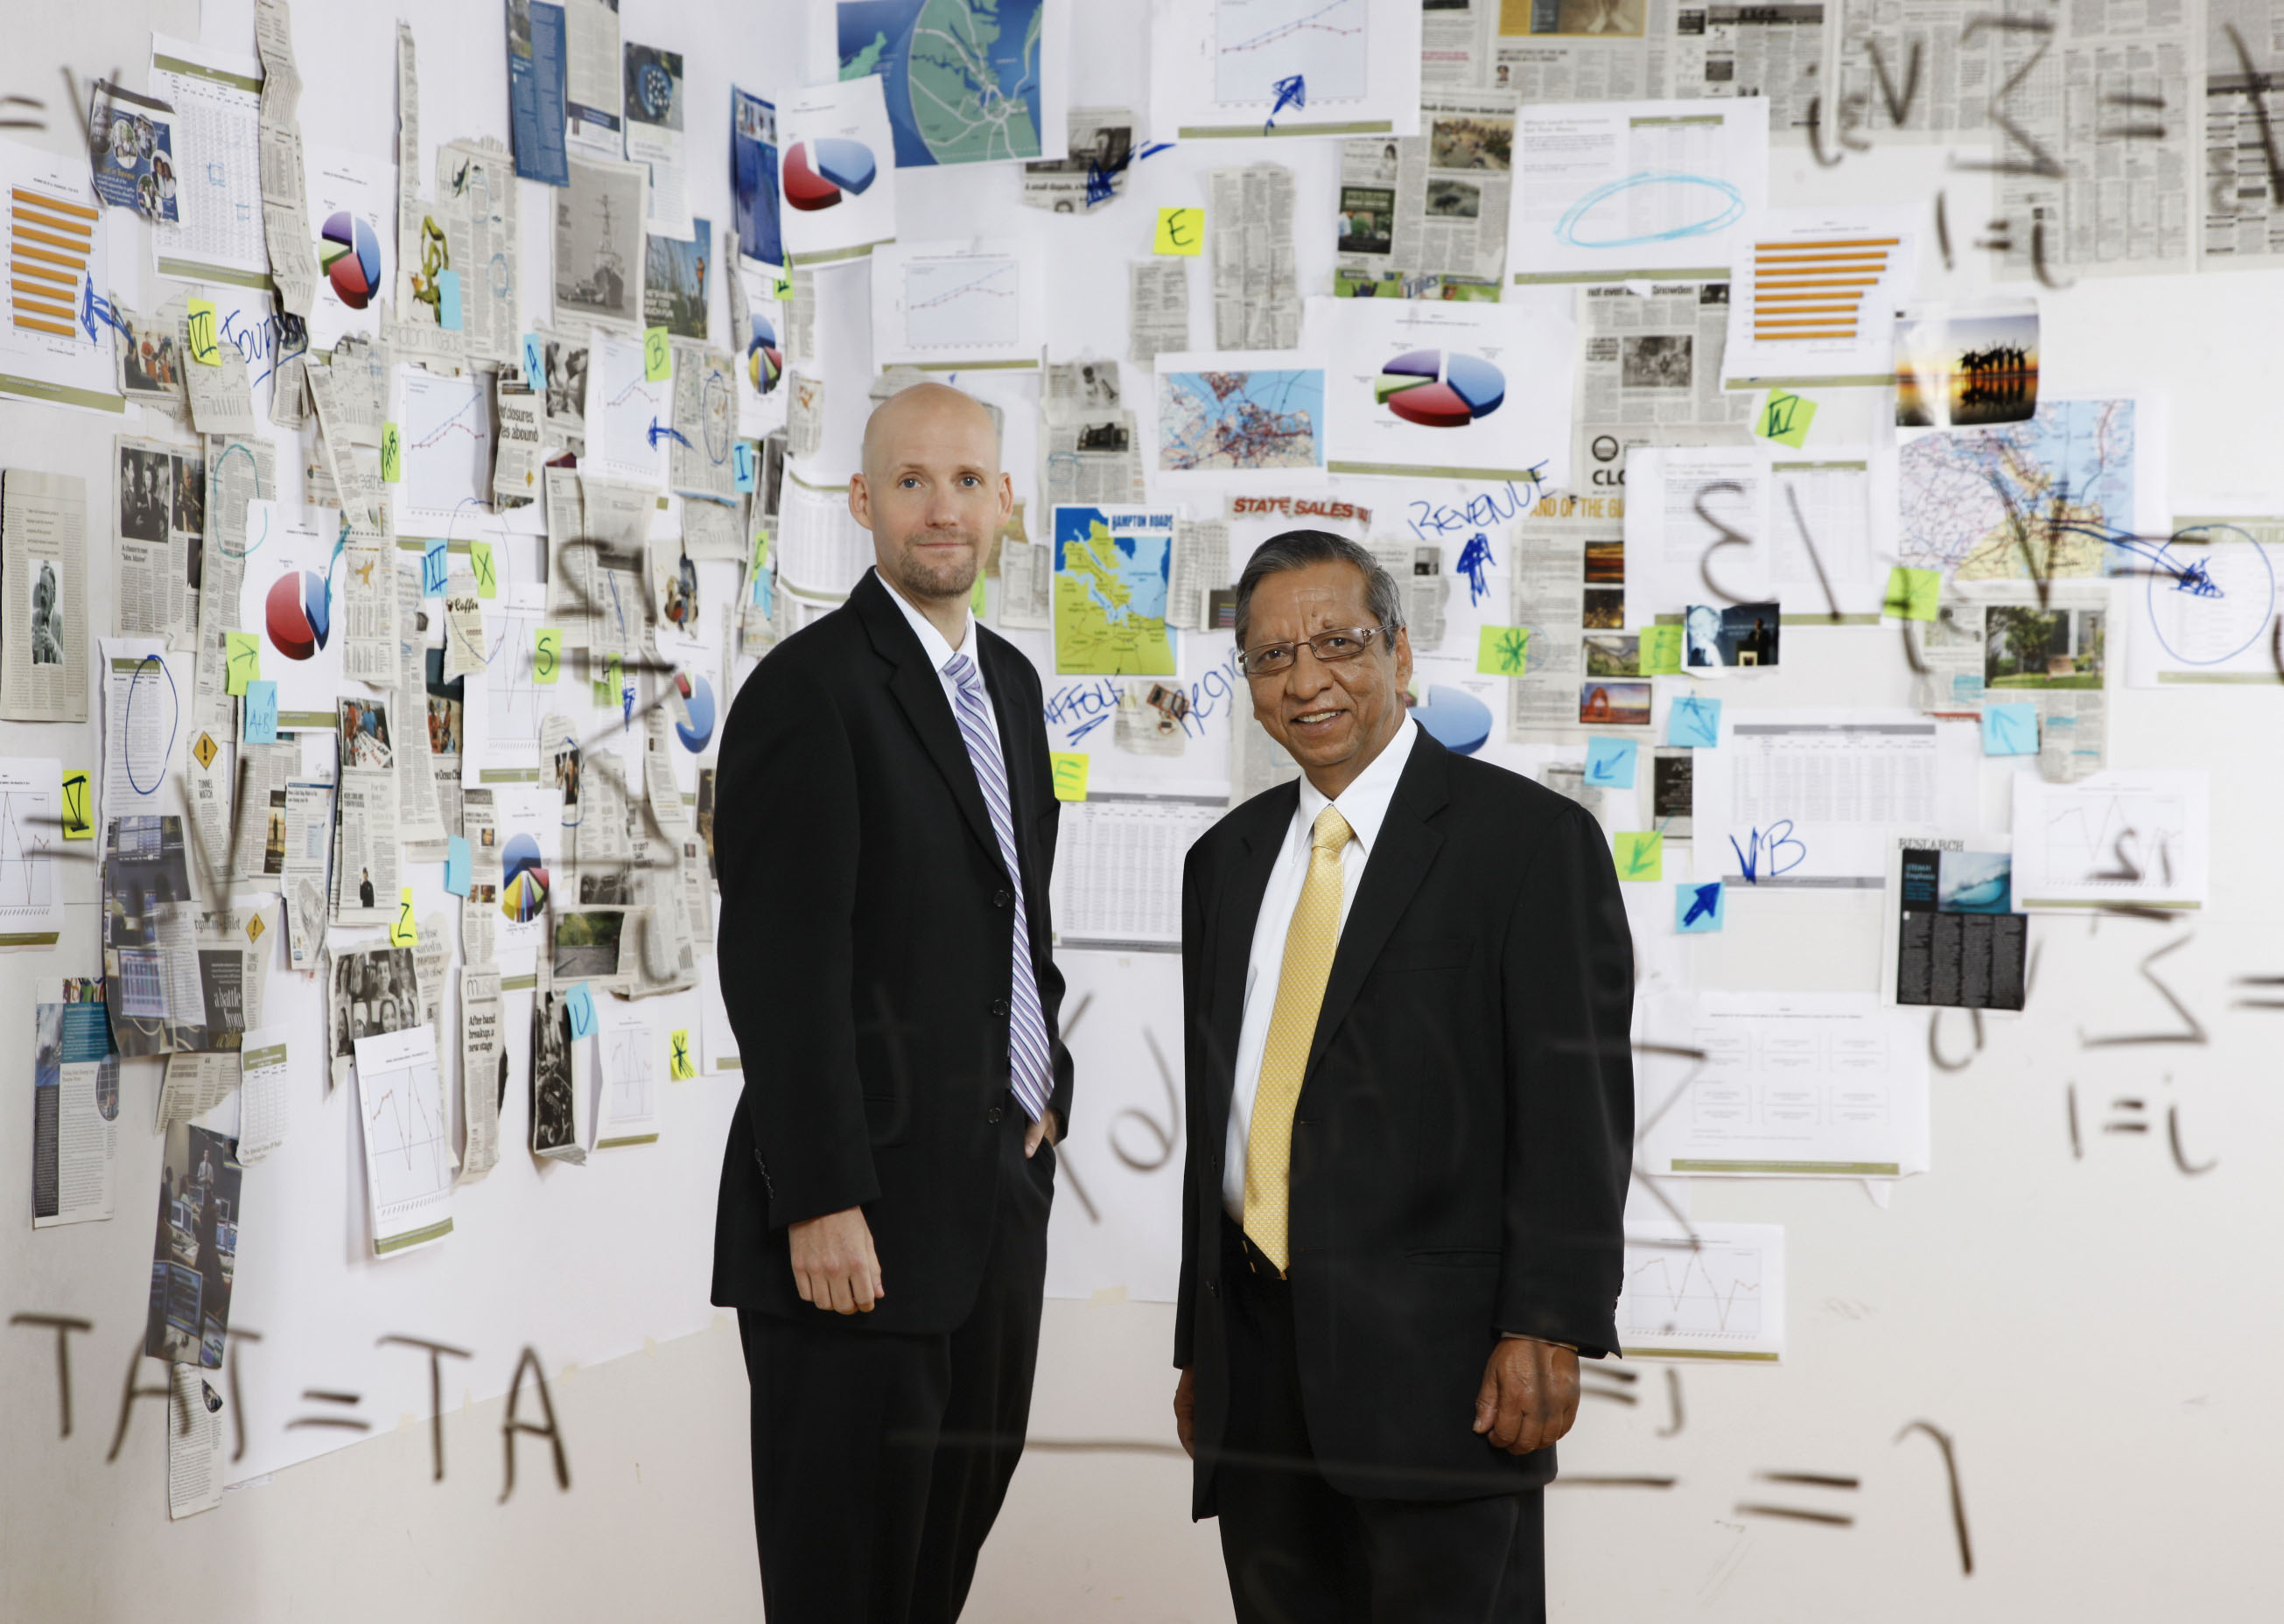 Gary Wagner &amp; Vinod Agarwal, the ODU Economic Forecasting team